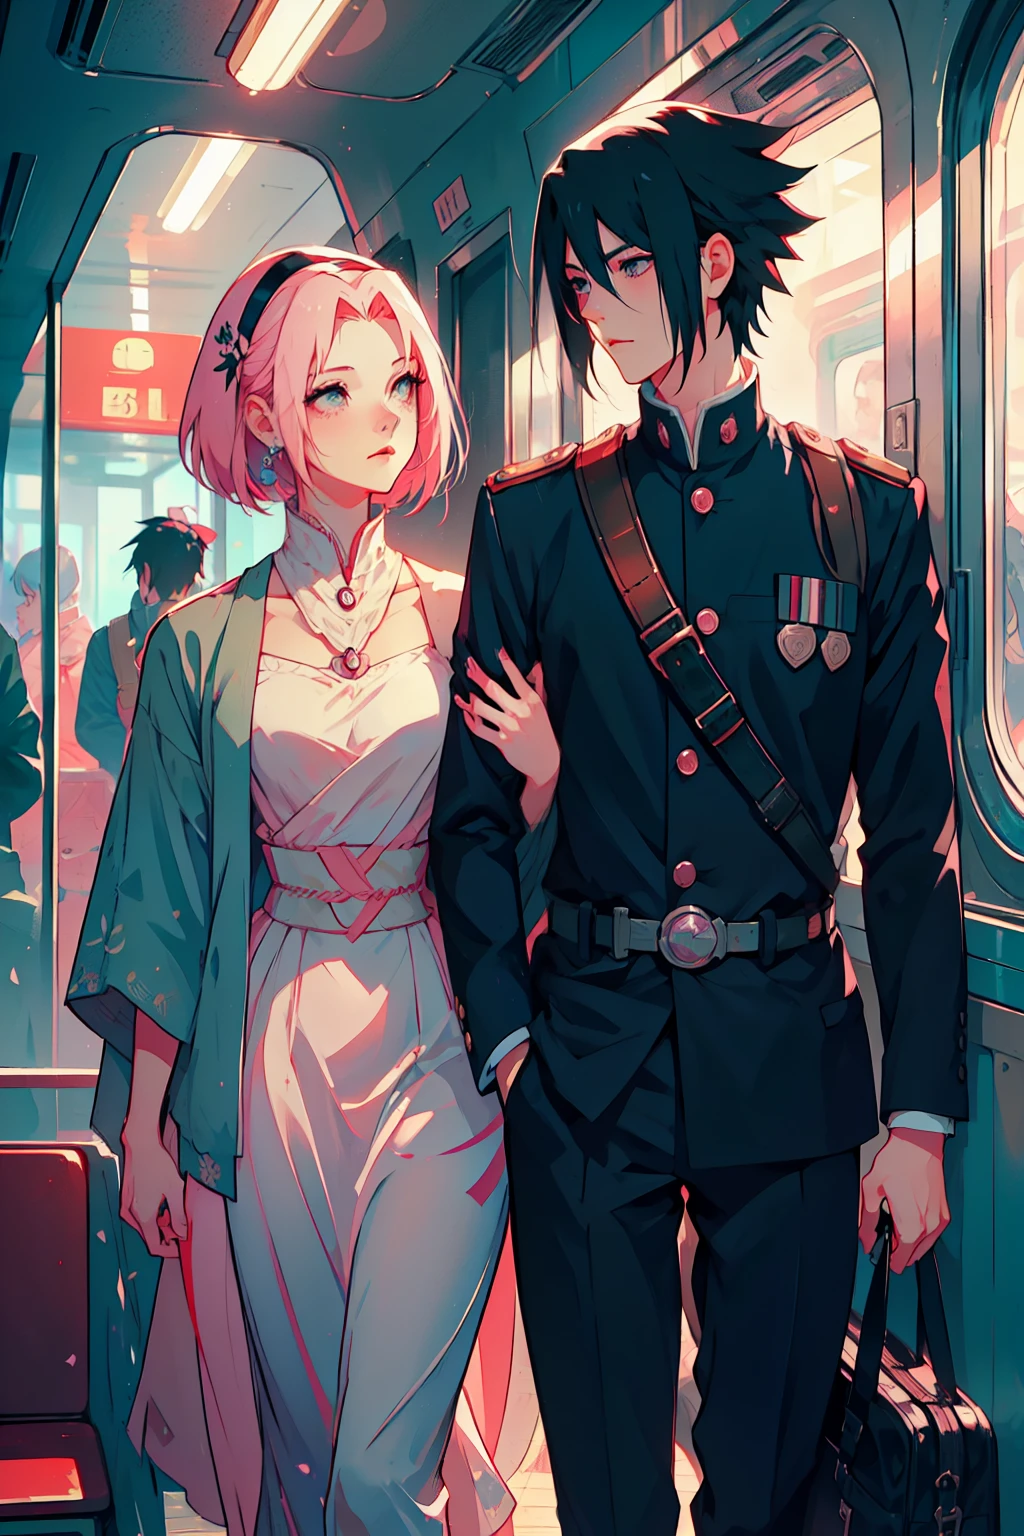 Sasusaku Das Paar auf dem Foto ist tief verliebt und verliert sich im Moment. Sasuke, Der Große, gutaussehender Mann mit gemeißelten Gesichtszügen und durchdringenden schwarzen Augen. Er hat ein selbstbewusstes und charismatisches Auftreten, und seine Liebe zu der Frau zeigt sich in der Art und Weise, wie er ihre wehmütige Anbetung betrachtet. Er trägt eine Militäruniform, Er ist ein Soldat. Die Frau ist gleichermaßen umwerfend mit weichen und zarten Gesichtszügen, ihr Haar ist kurz und rosa und fällt elegant um ihr Gesicht, was zu ihrem romantischen und verträumten Aussehen beiträgt. Sie trägt ein Ensemble aus den 50er Jahren. Das Paar verabschiedet sich auf einer Bahnstrecke, er zieht in den Krieg.